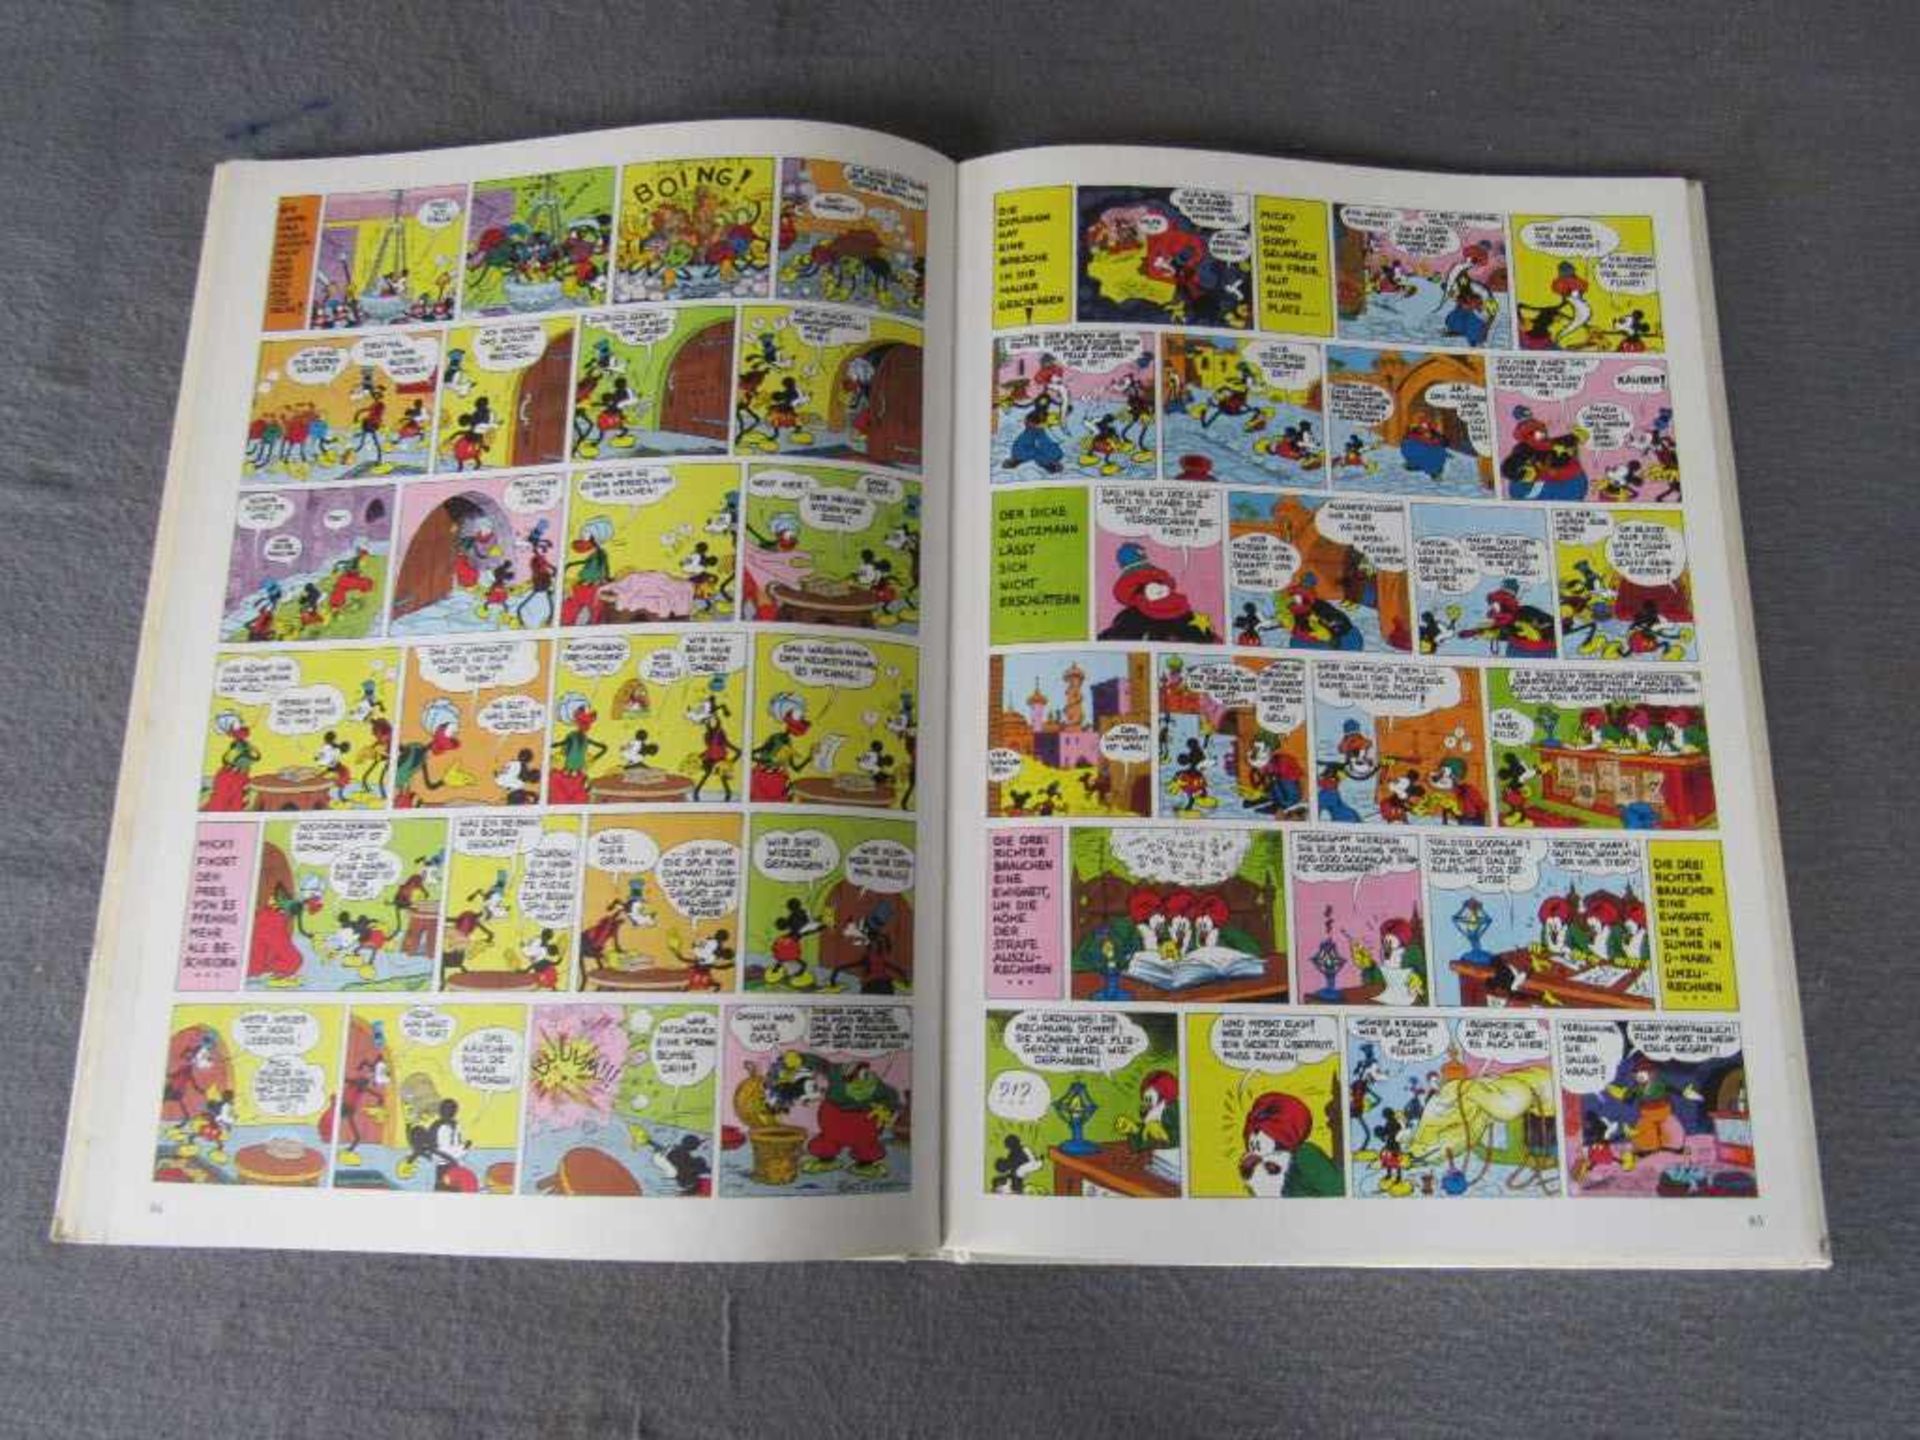 Micky Maus Buch von 1970 guter Zustand- - -20.00 % buyer's premium on the hammer price19.00 % VAT on - Bild 2 aus 2